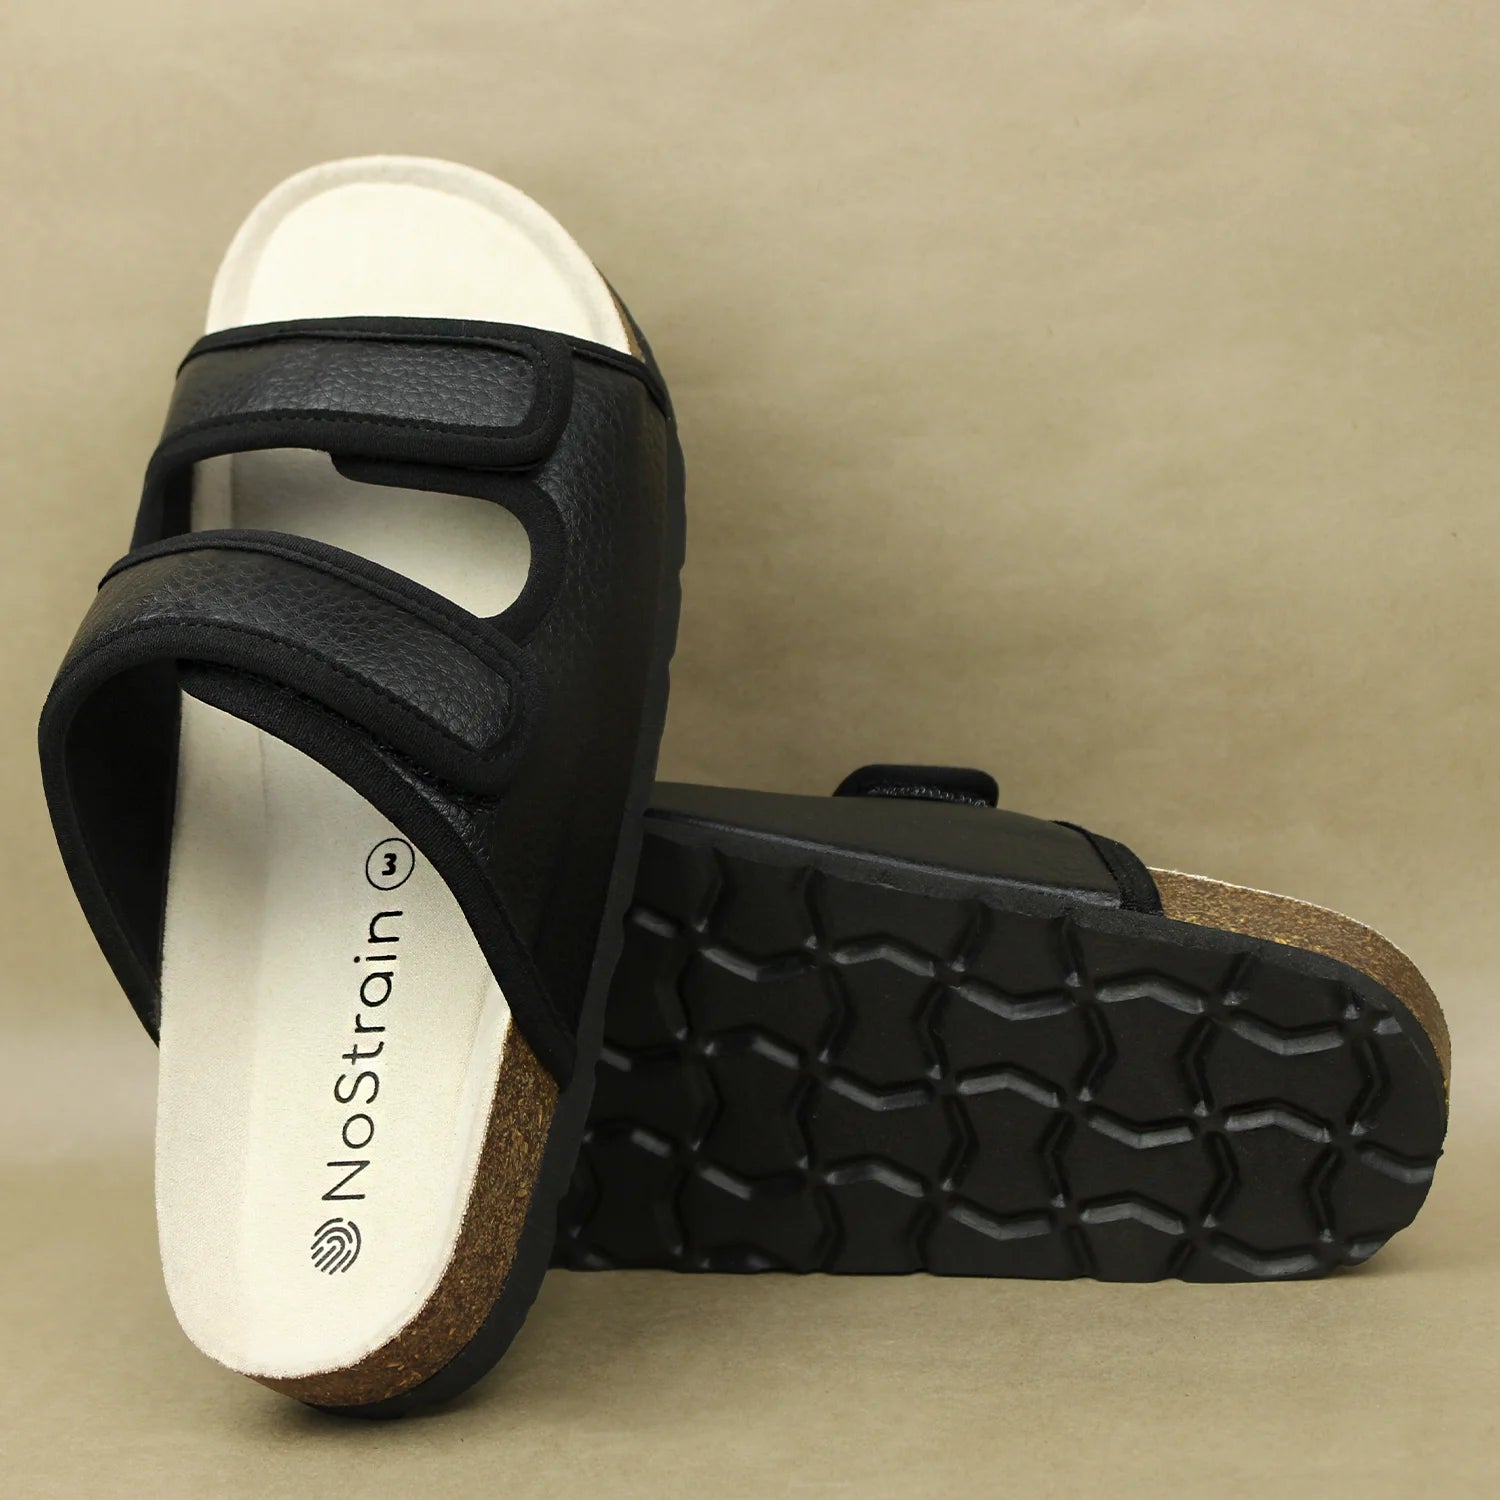 Black cork sandals with 2 cm heel height